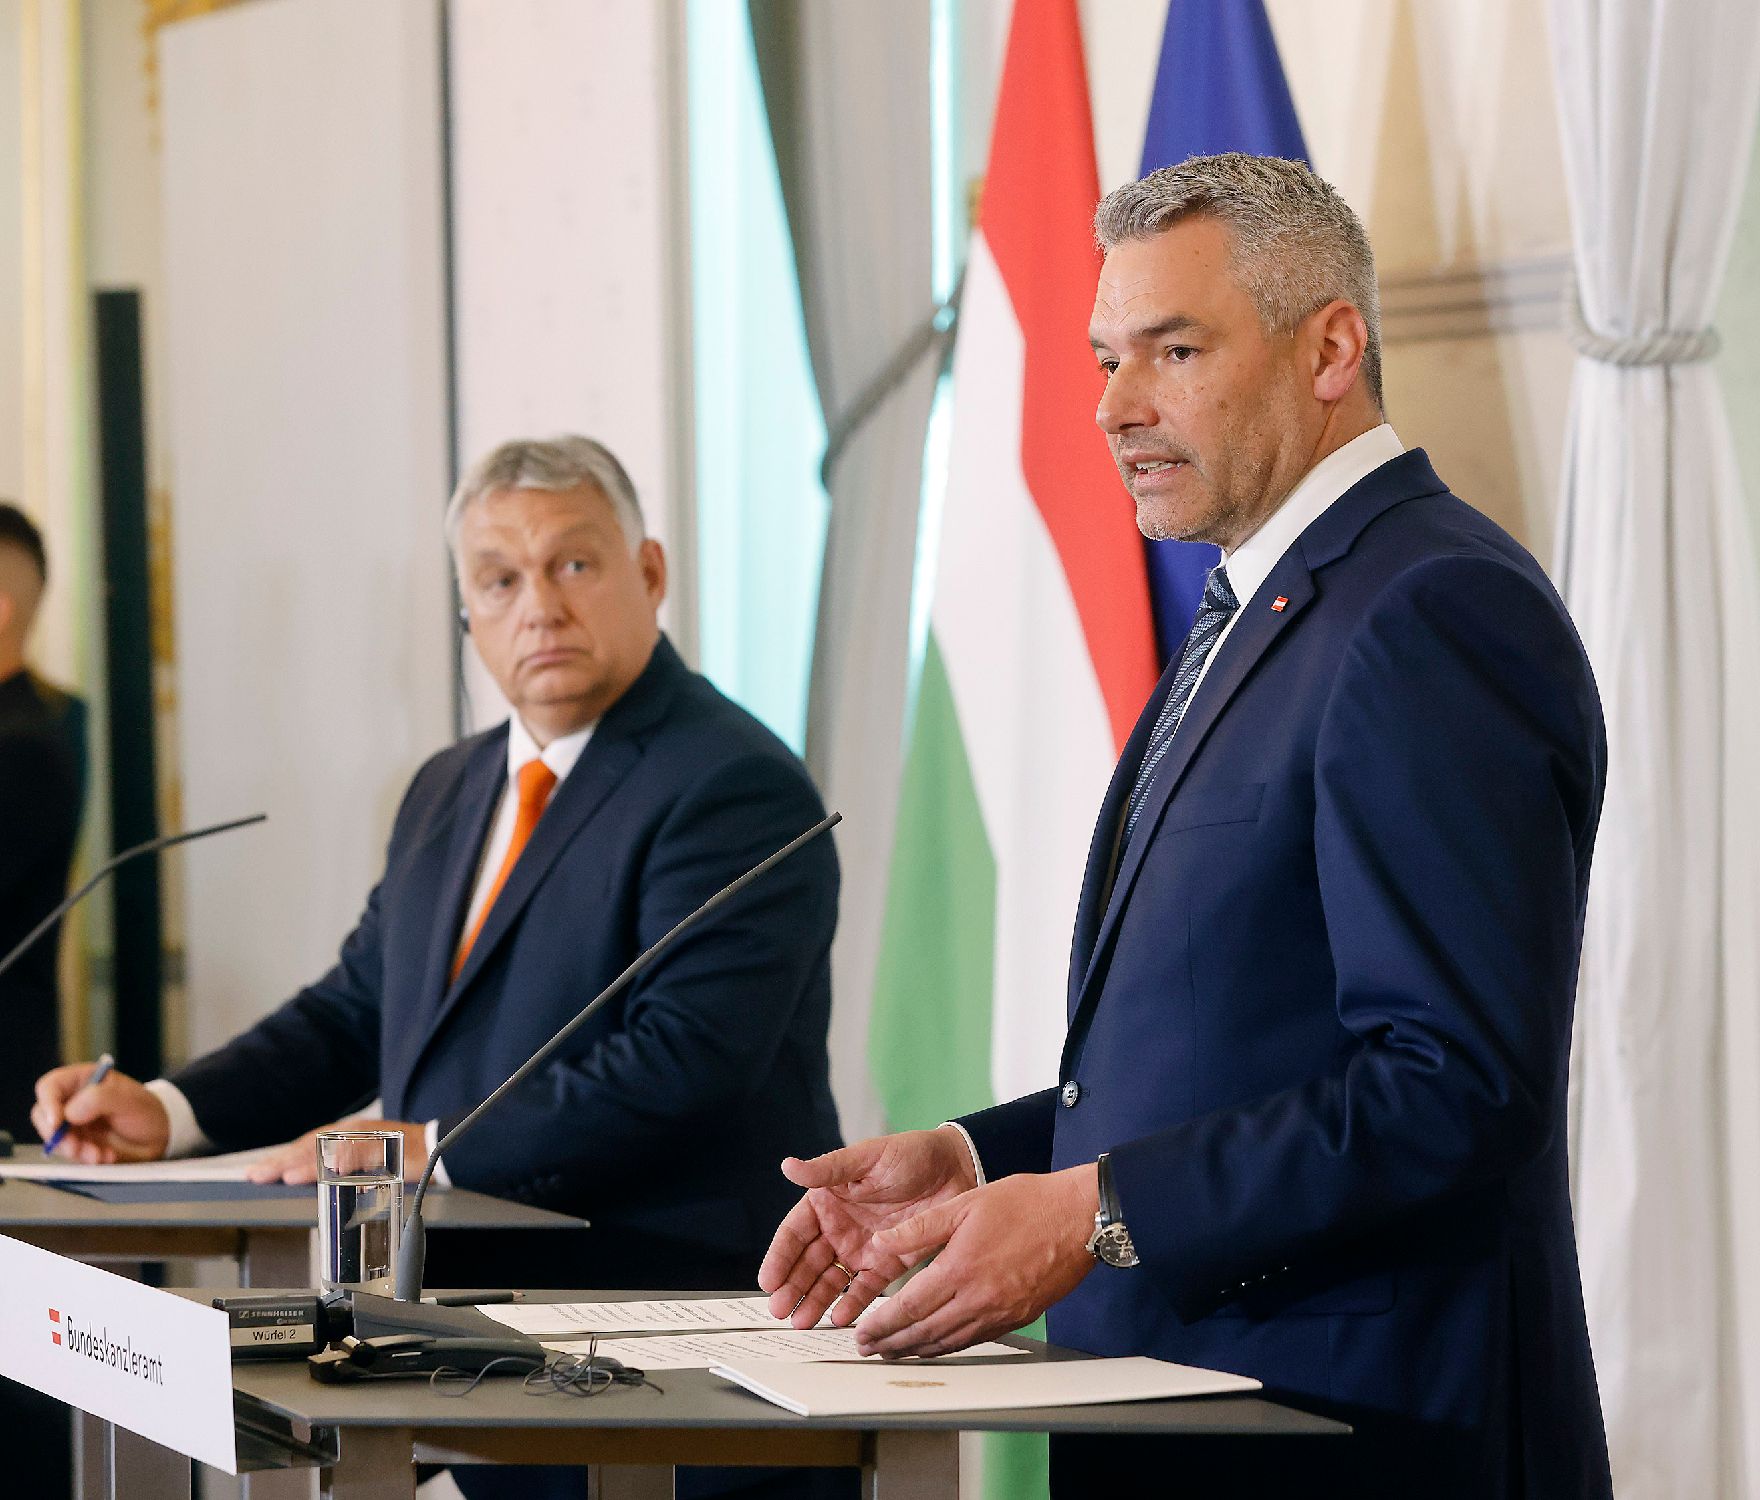 Am 28. Juli 2022 empfing Bundeskanzler Karl Nehammer (r.) den ungarischen Ministerpräsident Viktor Orban (l.). Im Bild bei einem gemeinsamen Pressestatement.